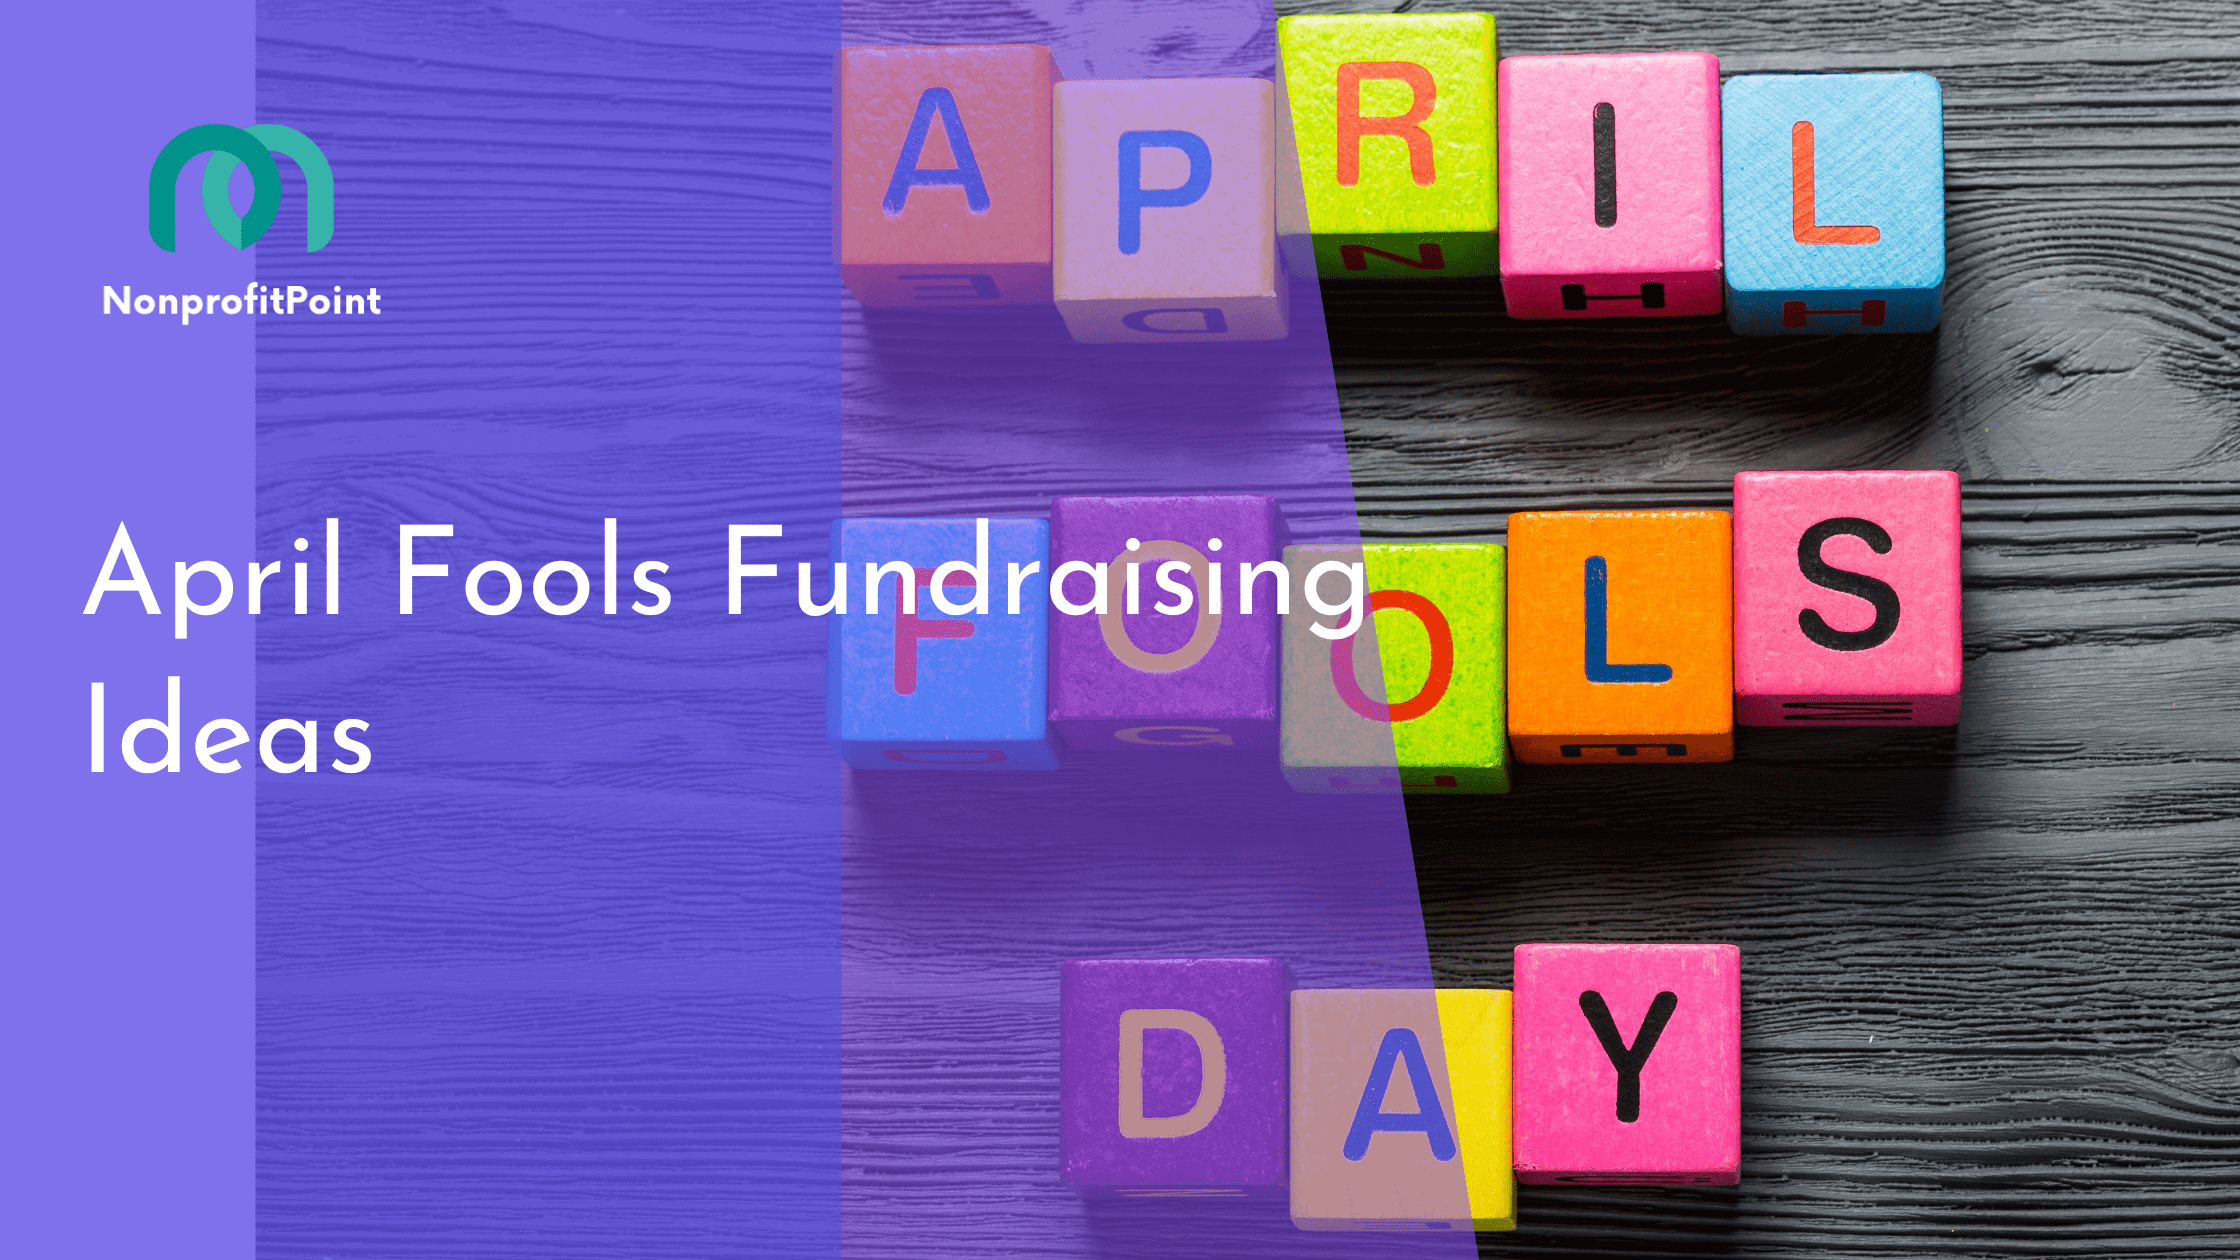 April Fools Fundraising Ideas